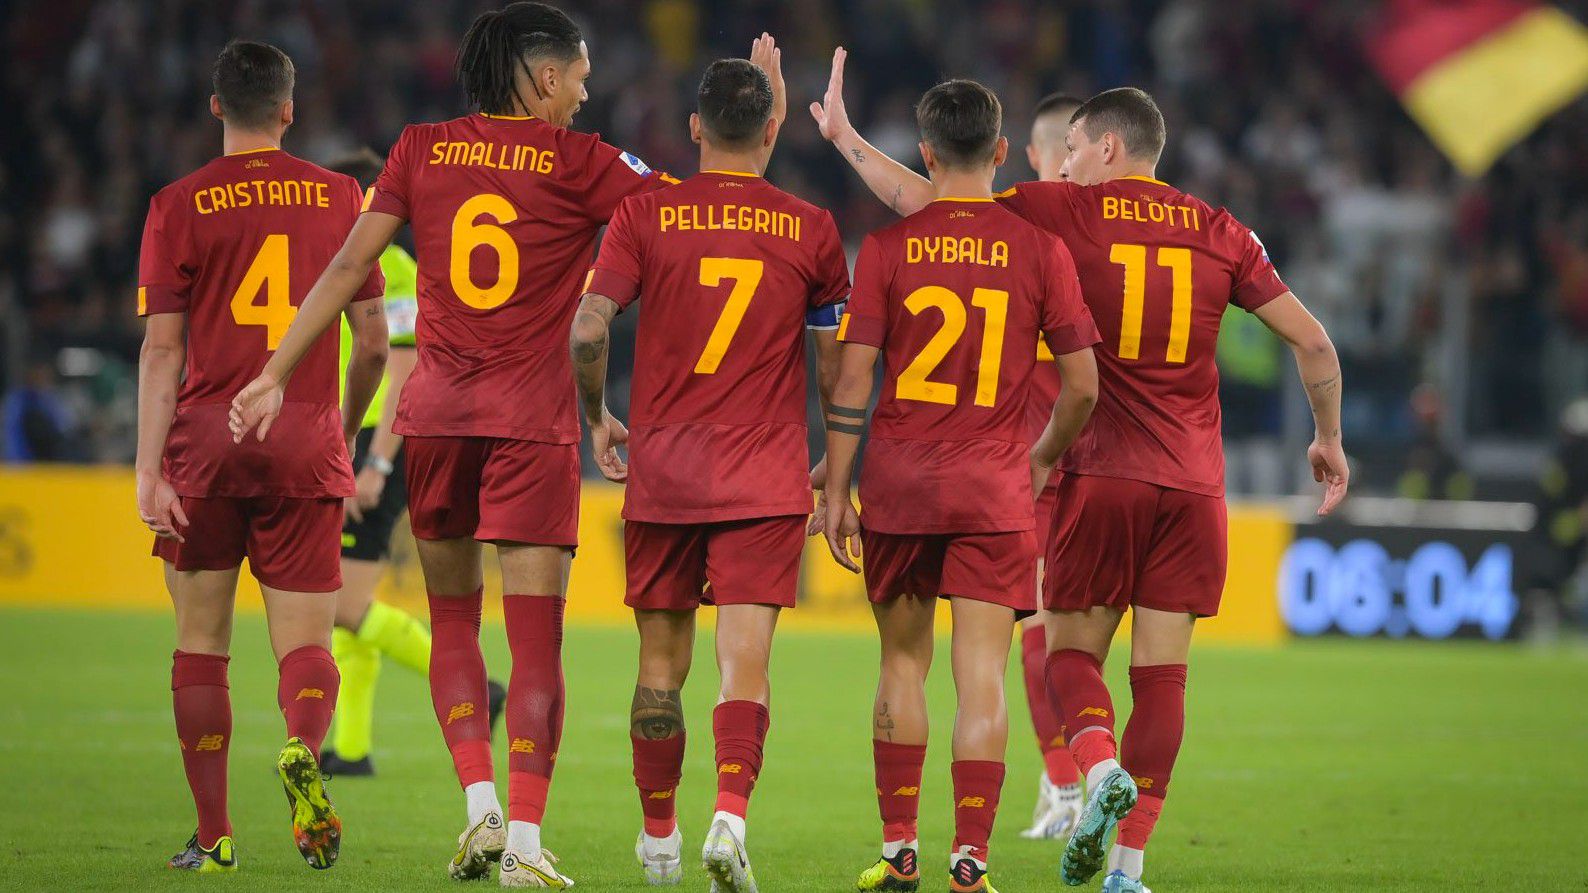 Dybala győztes gólt lőtt, ám nagy árat fizethet érte a Roma - videóval